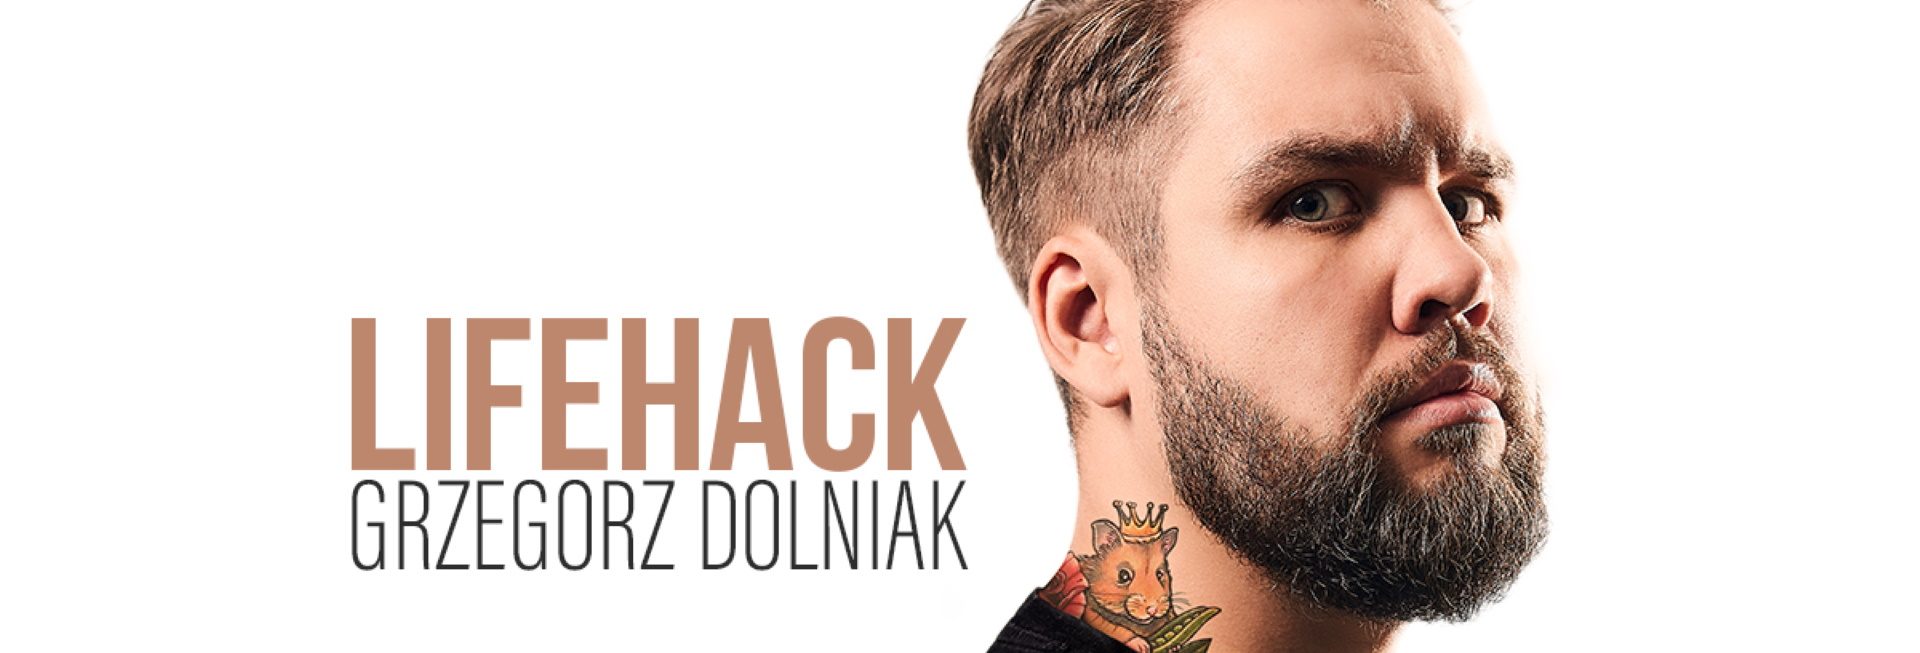 Plakat zapraszający do na występ Stand-up Grzegorz Dolniak - Lifehack. 